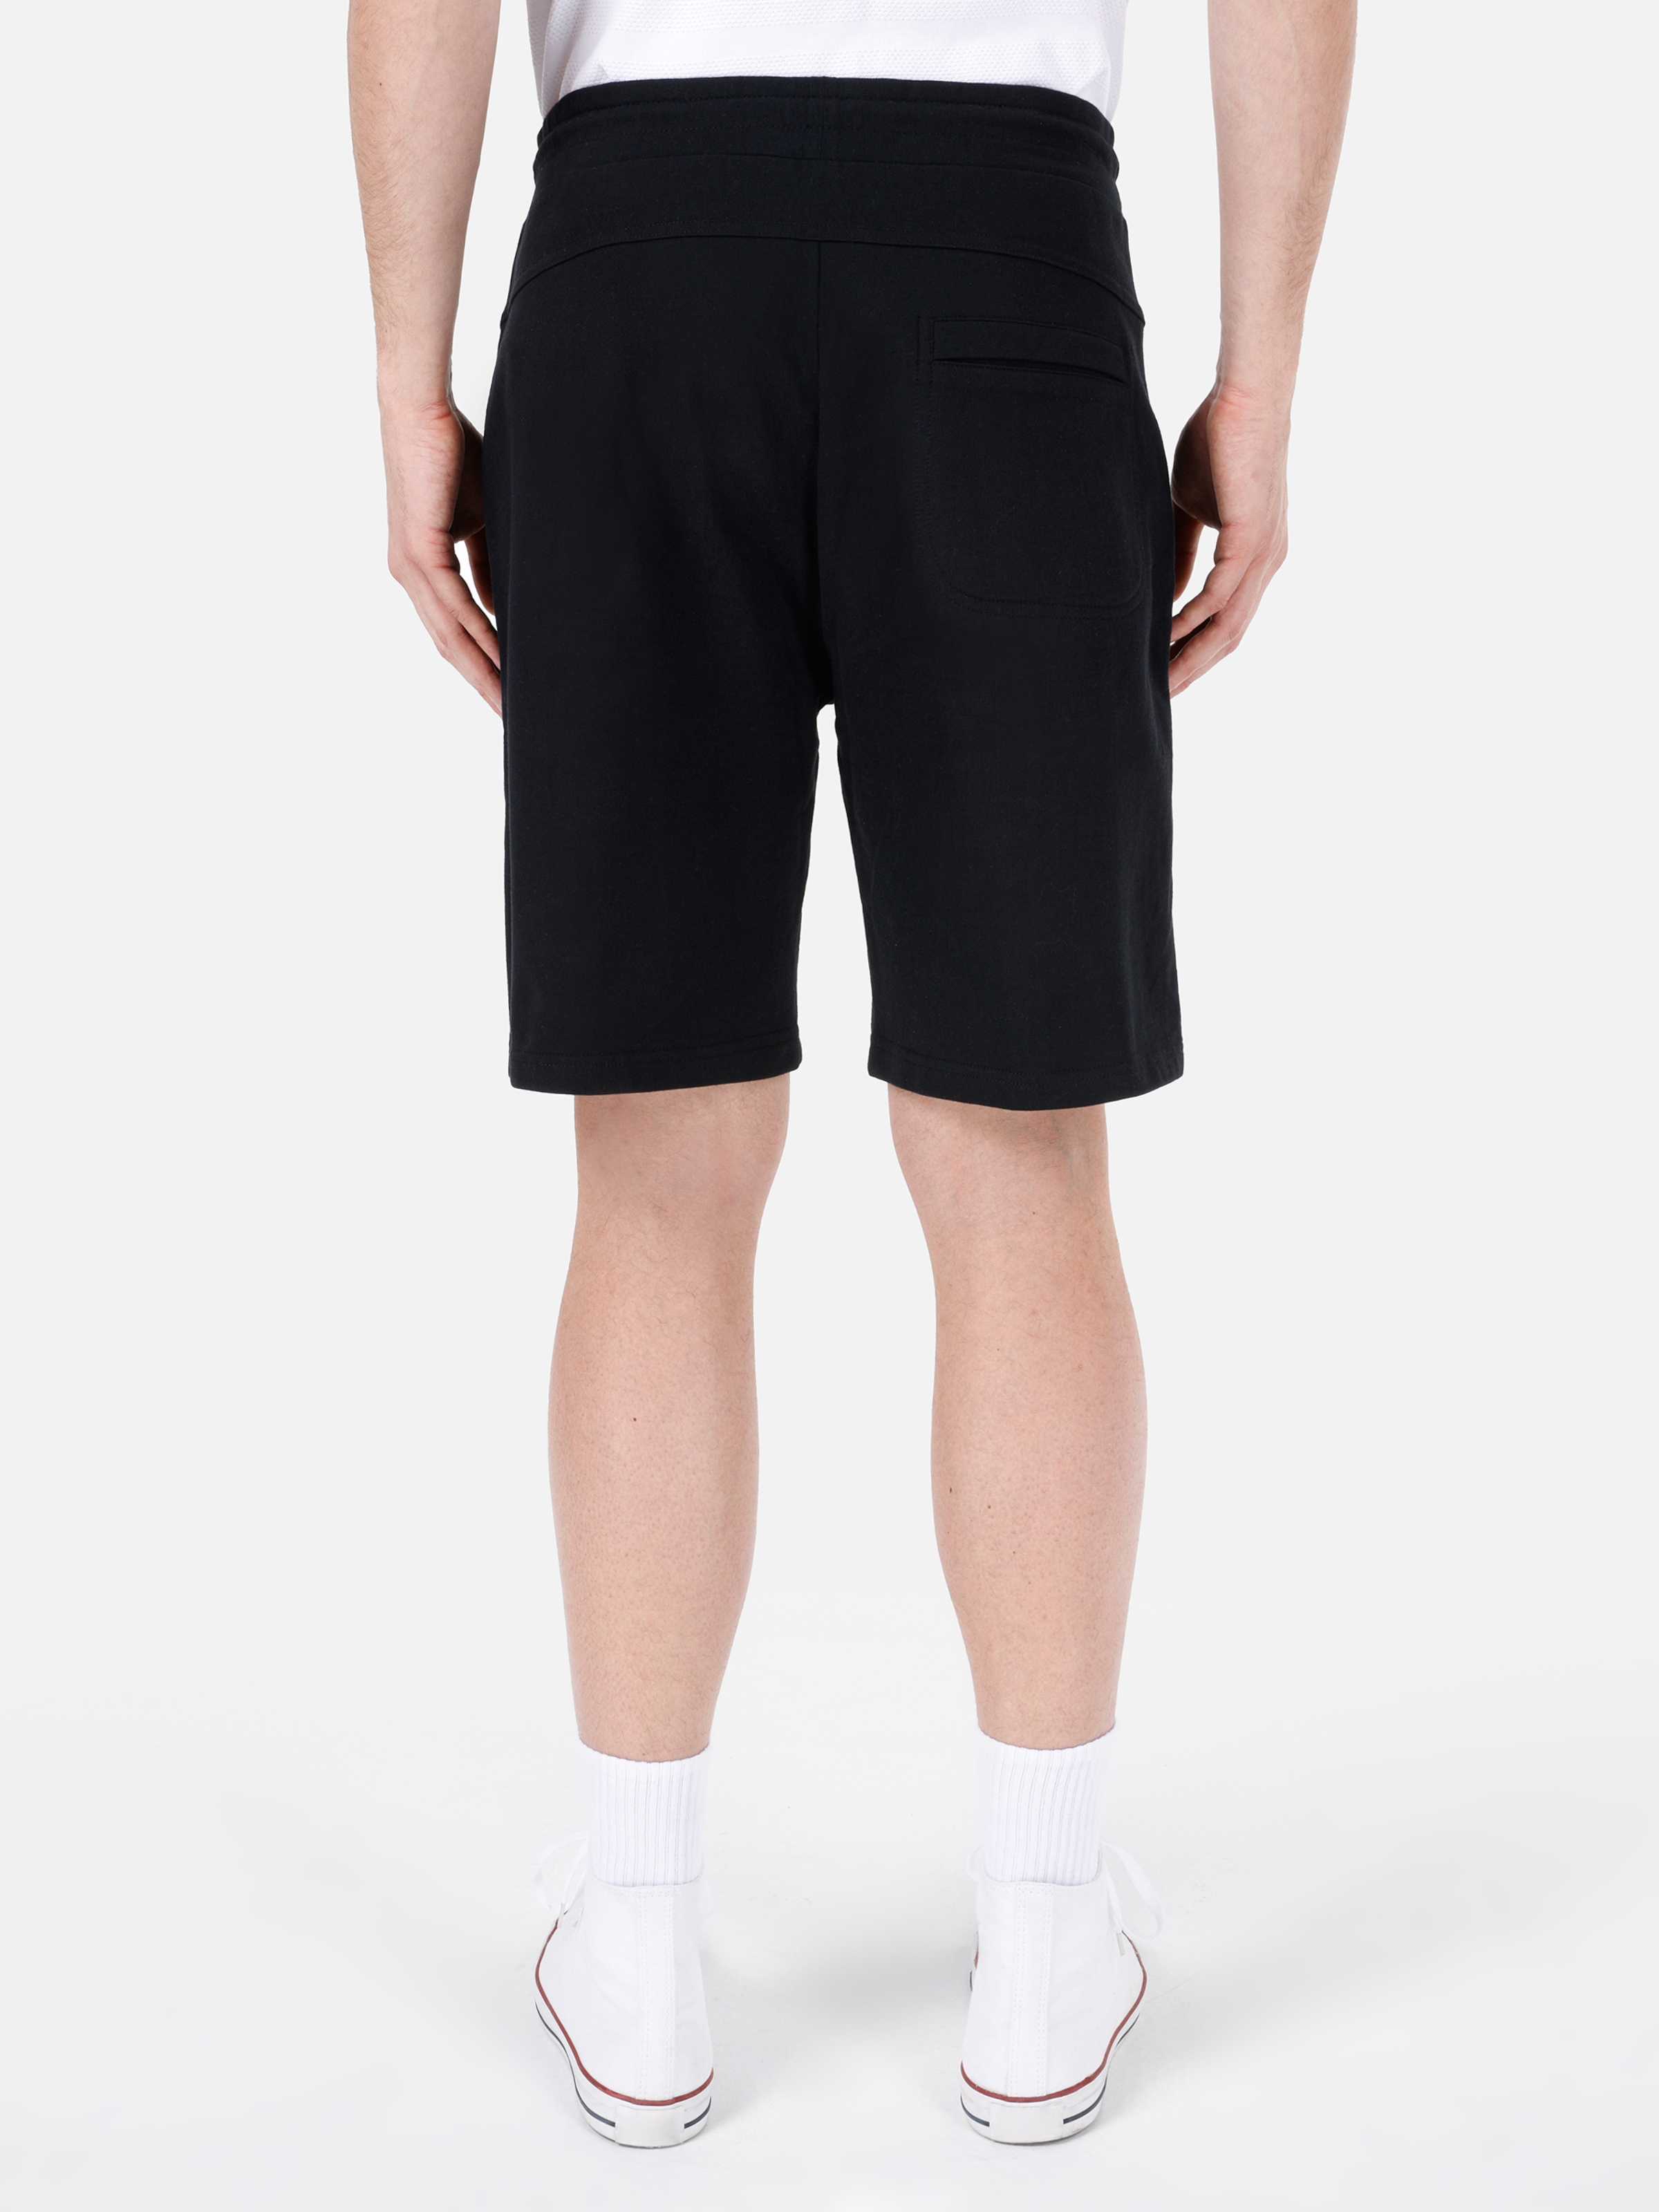 Afișați detalii pentru Short / Pantaloni Scurti De Barbati Negru Regular Fit  